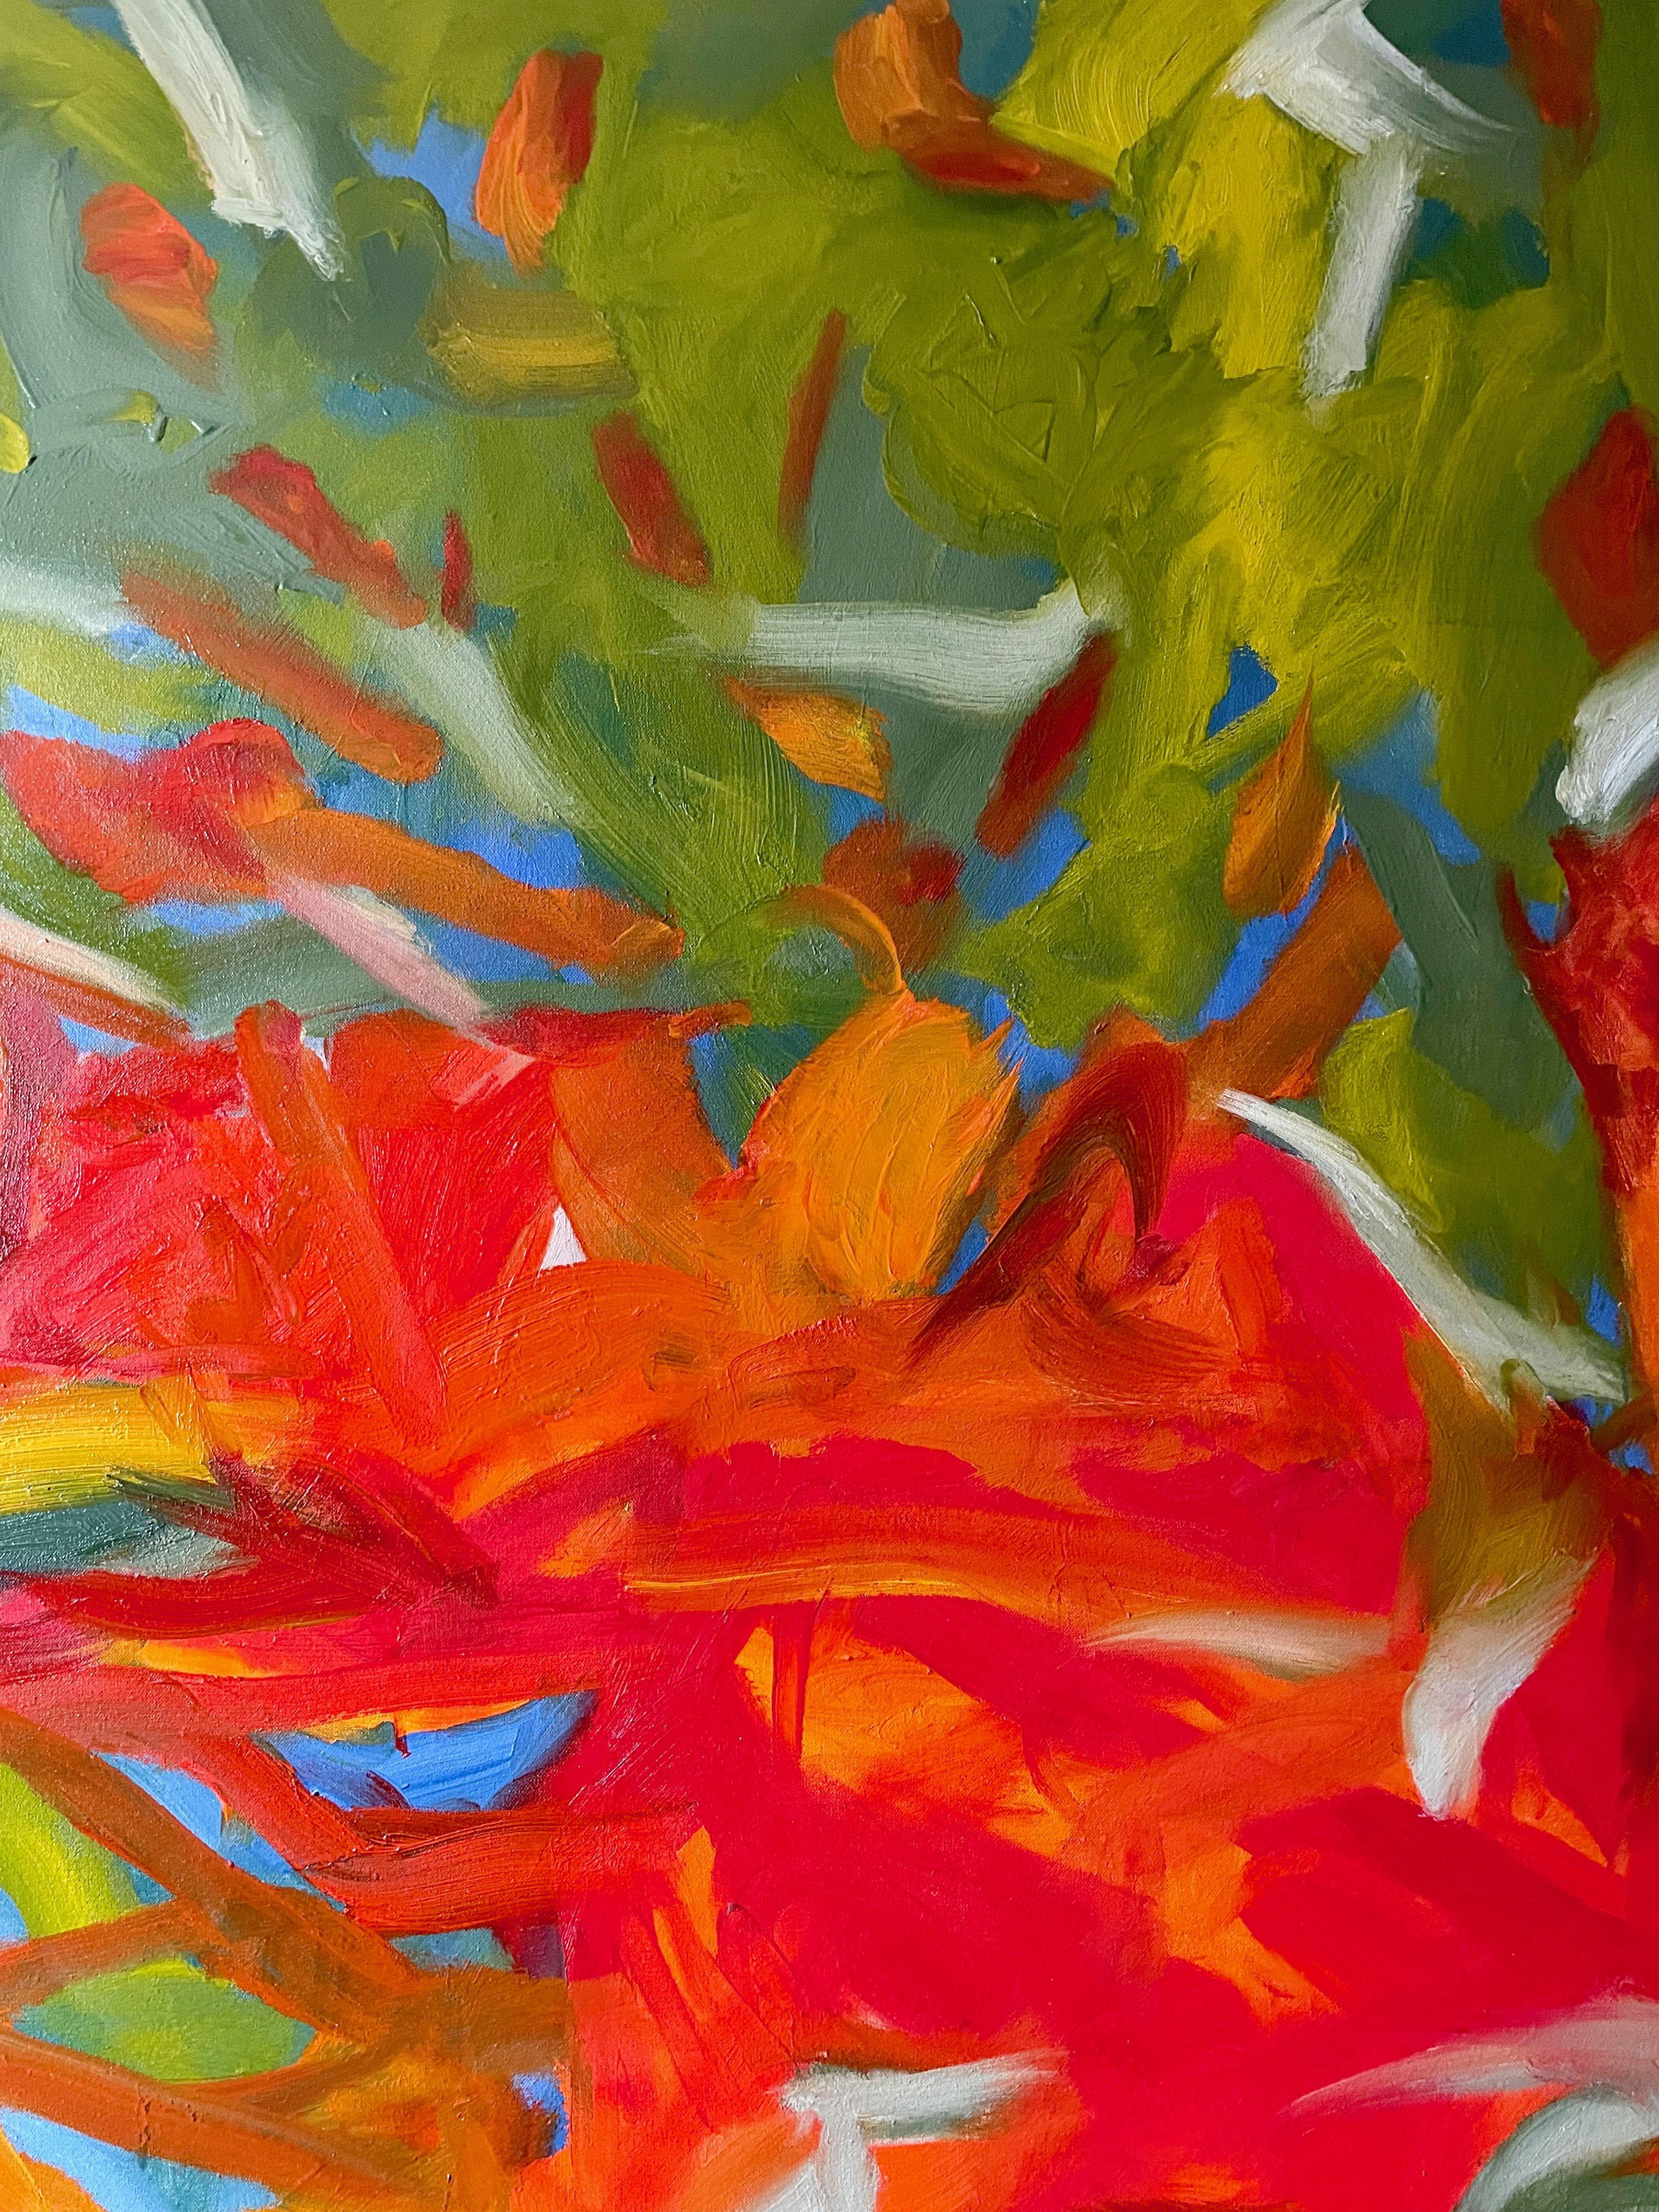 Je suis bloqué sur la pensée de U, peinture, huile sur toile - Expressionnisme abstrait Painting par Steven Miller